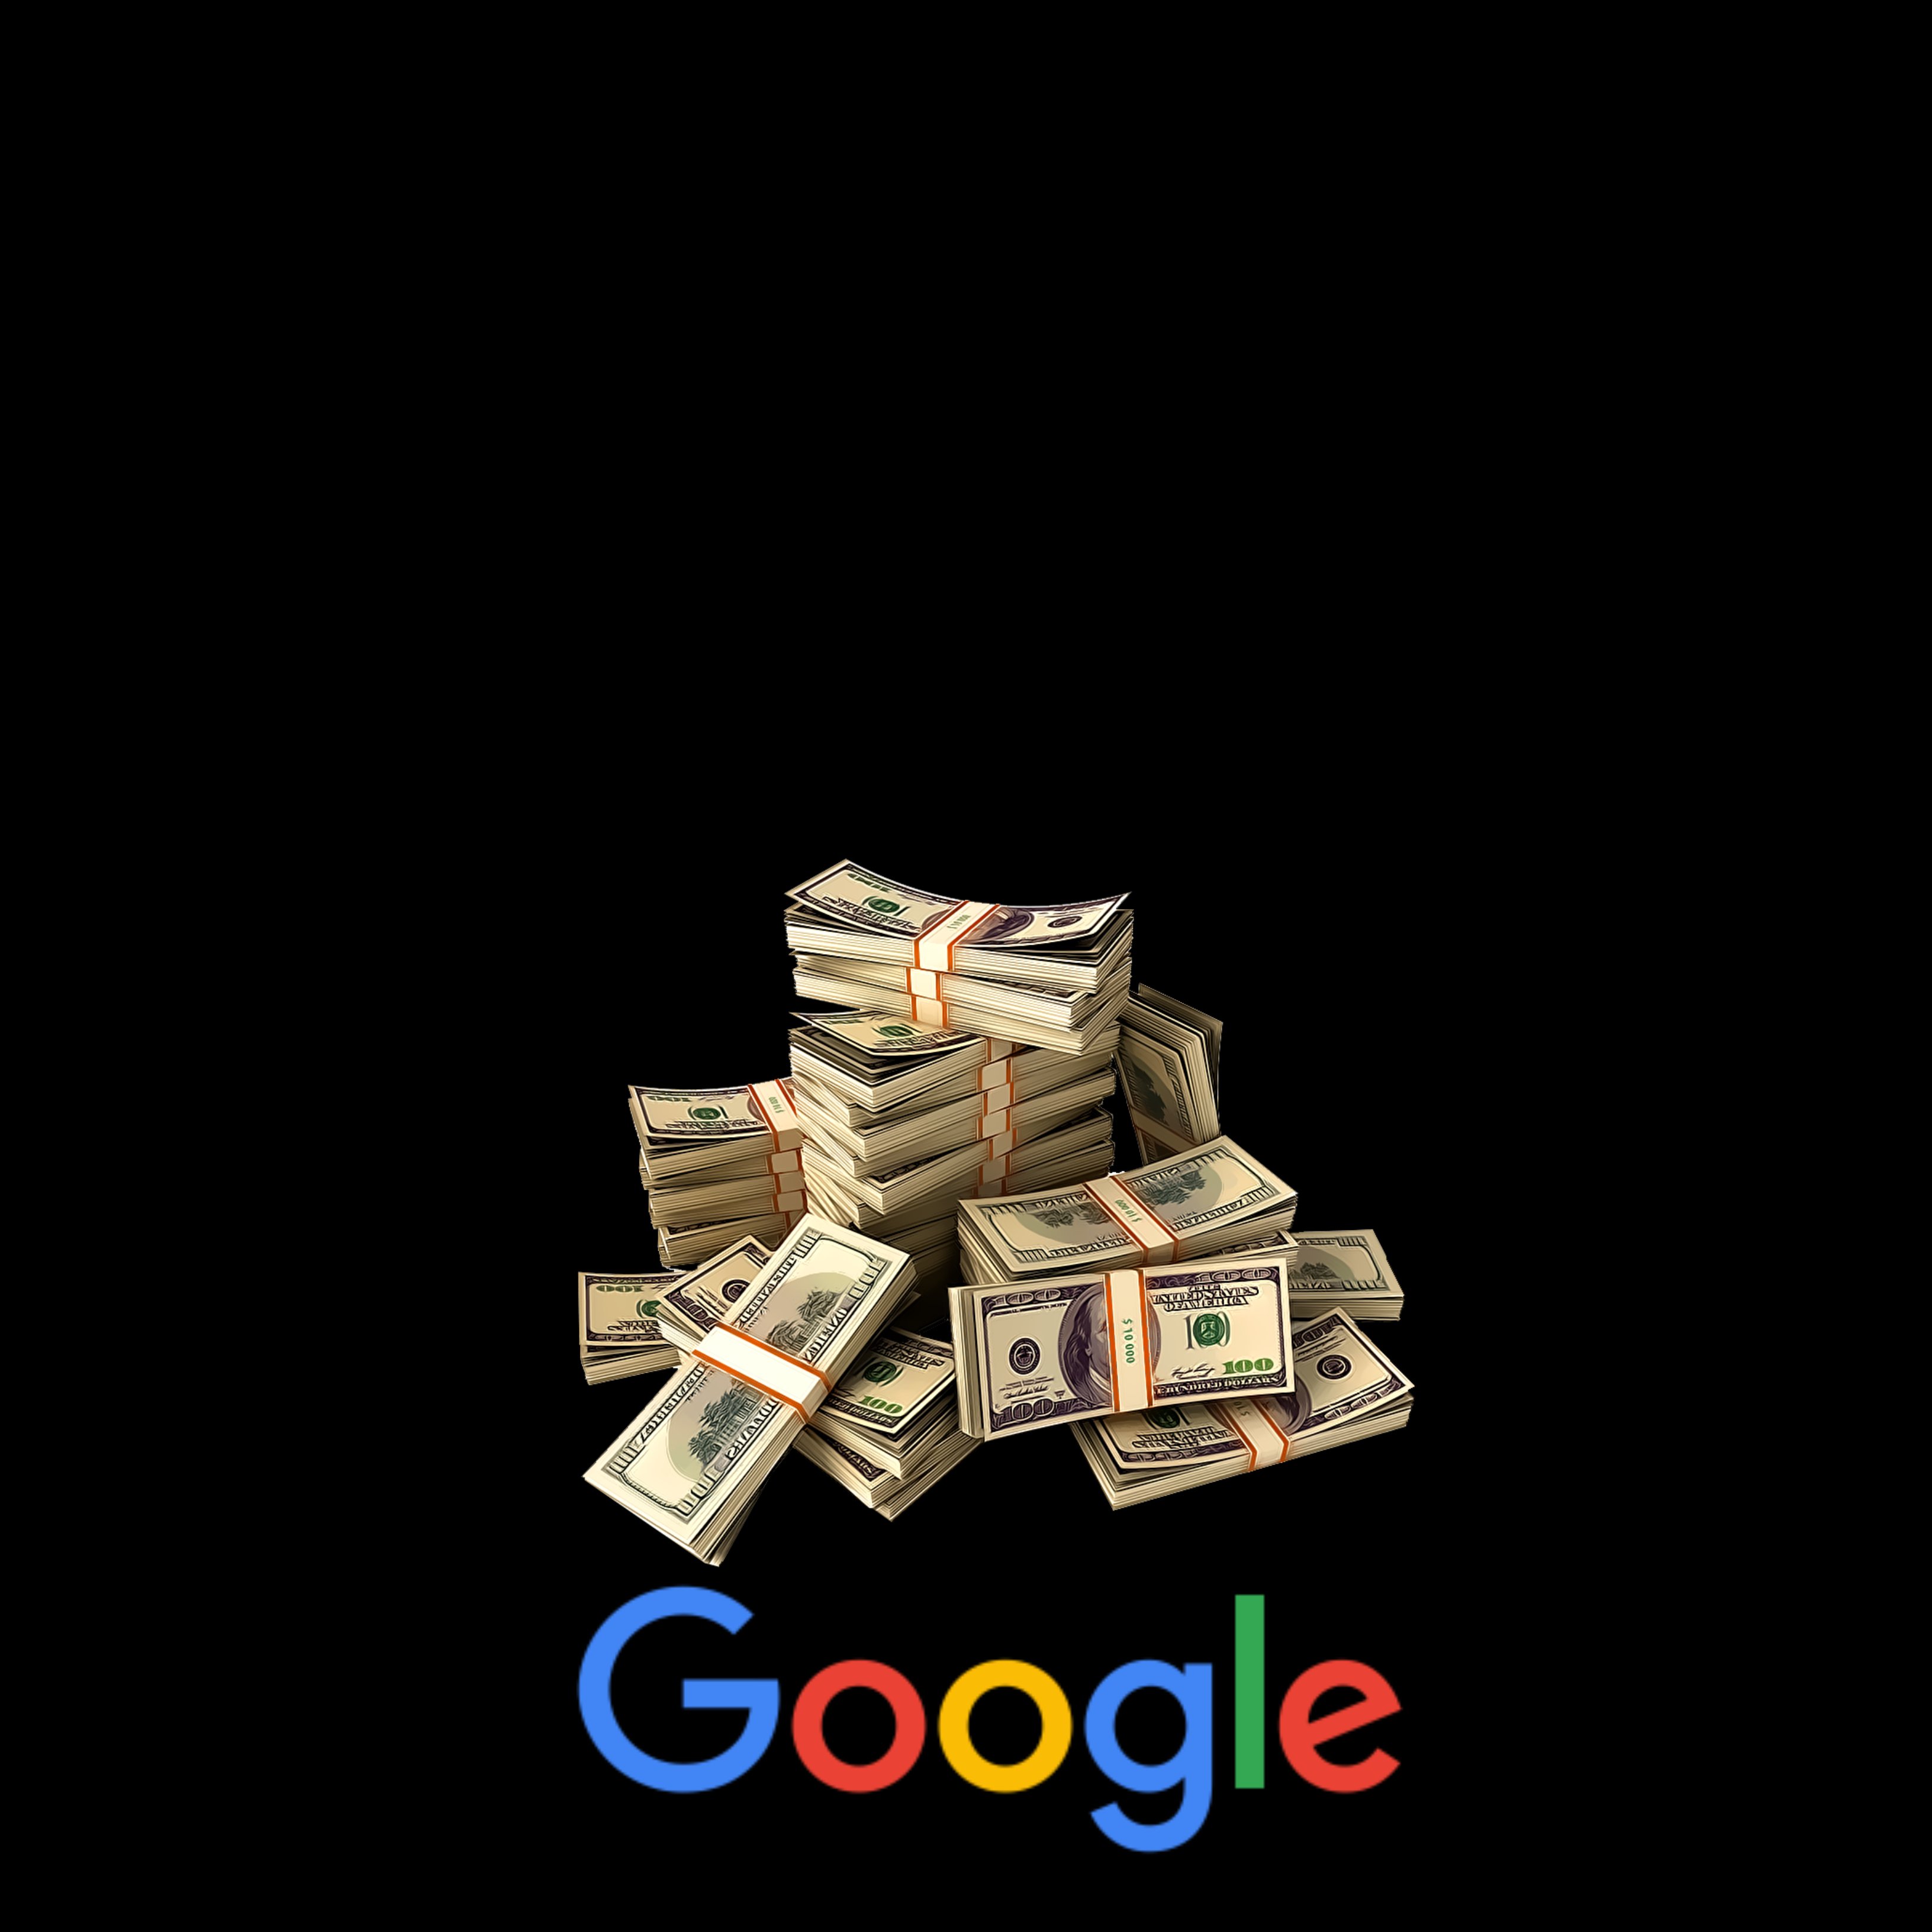 Google deixarà les pràctiques amb les quals eludia pagar una fortuna en impostos